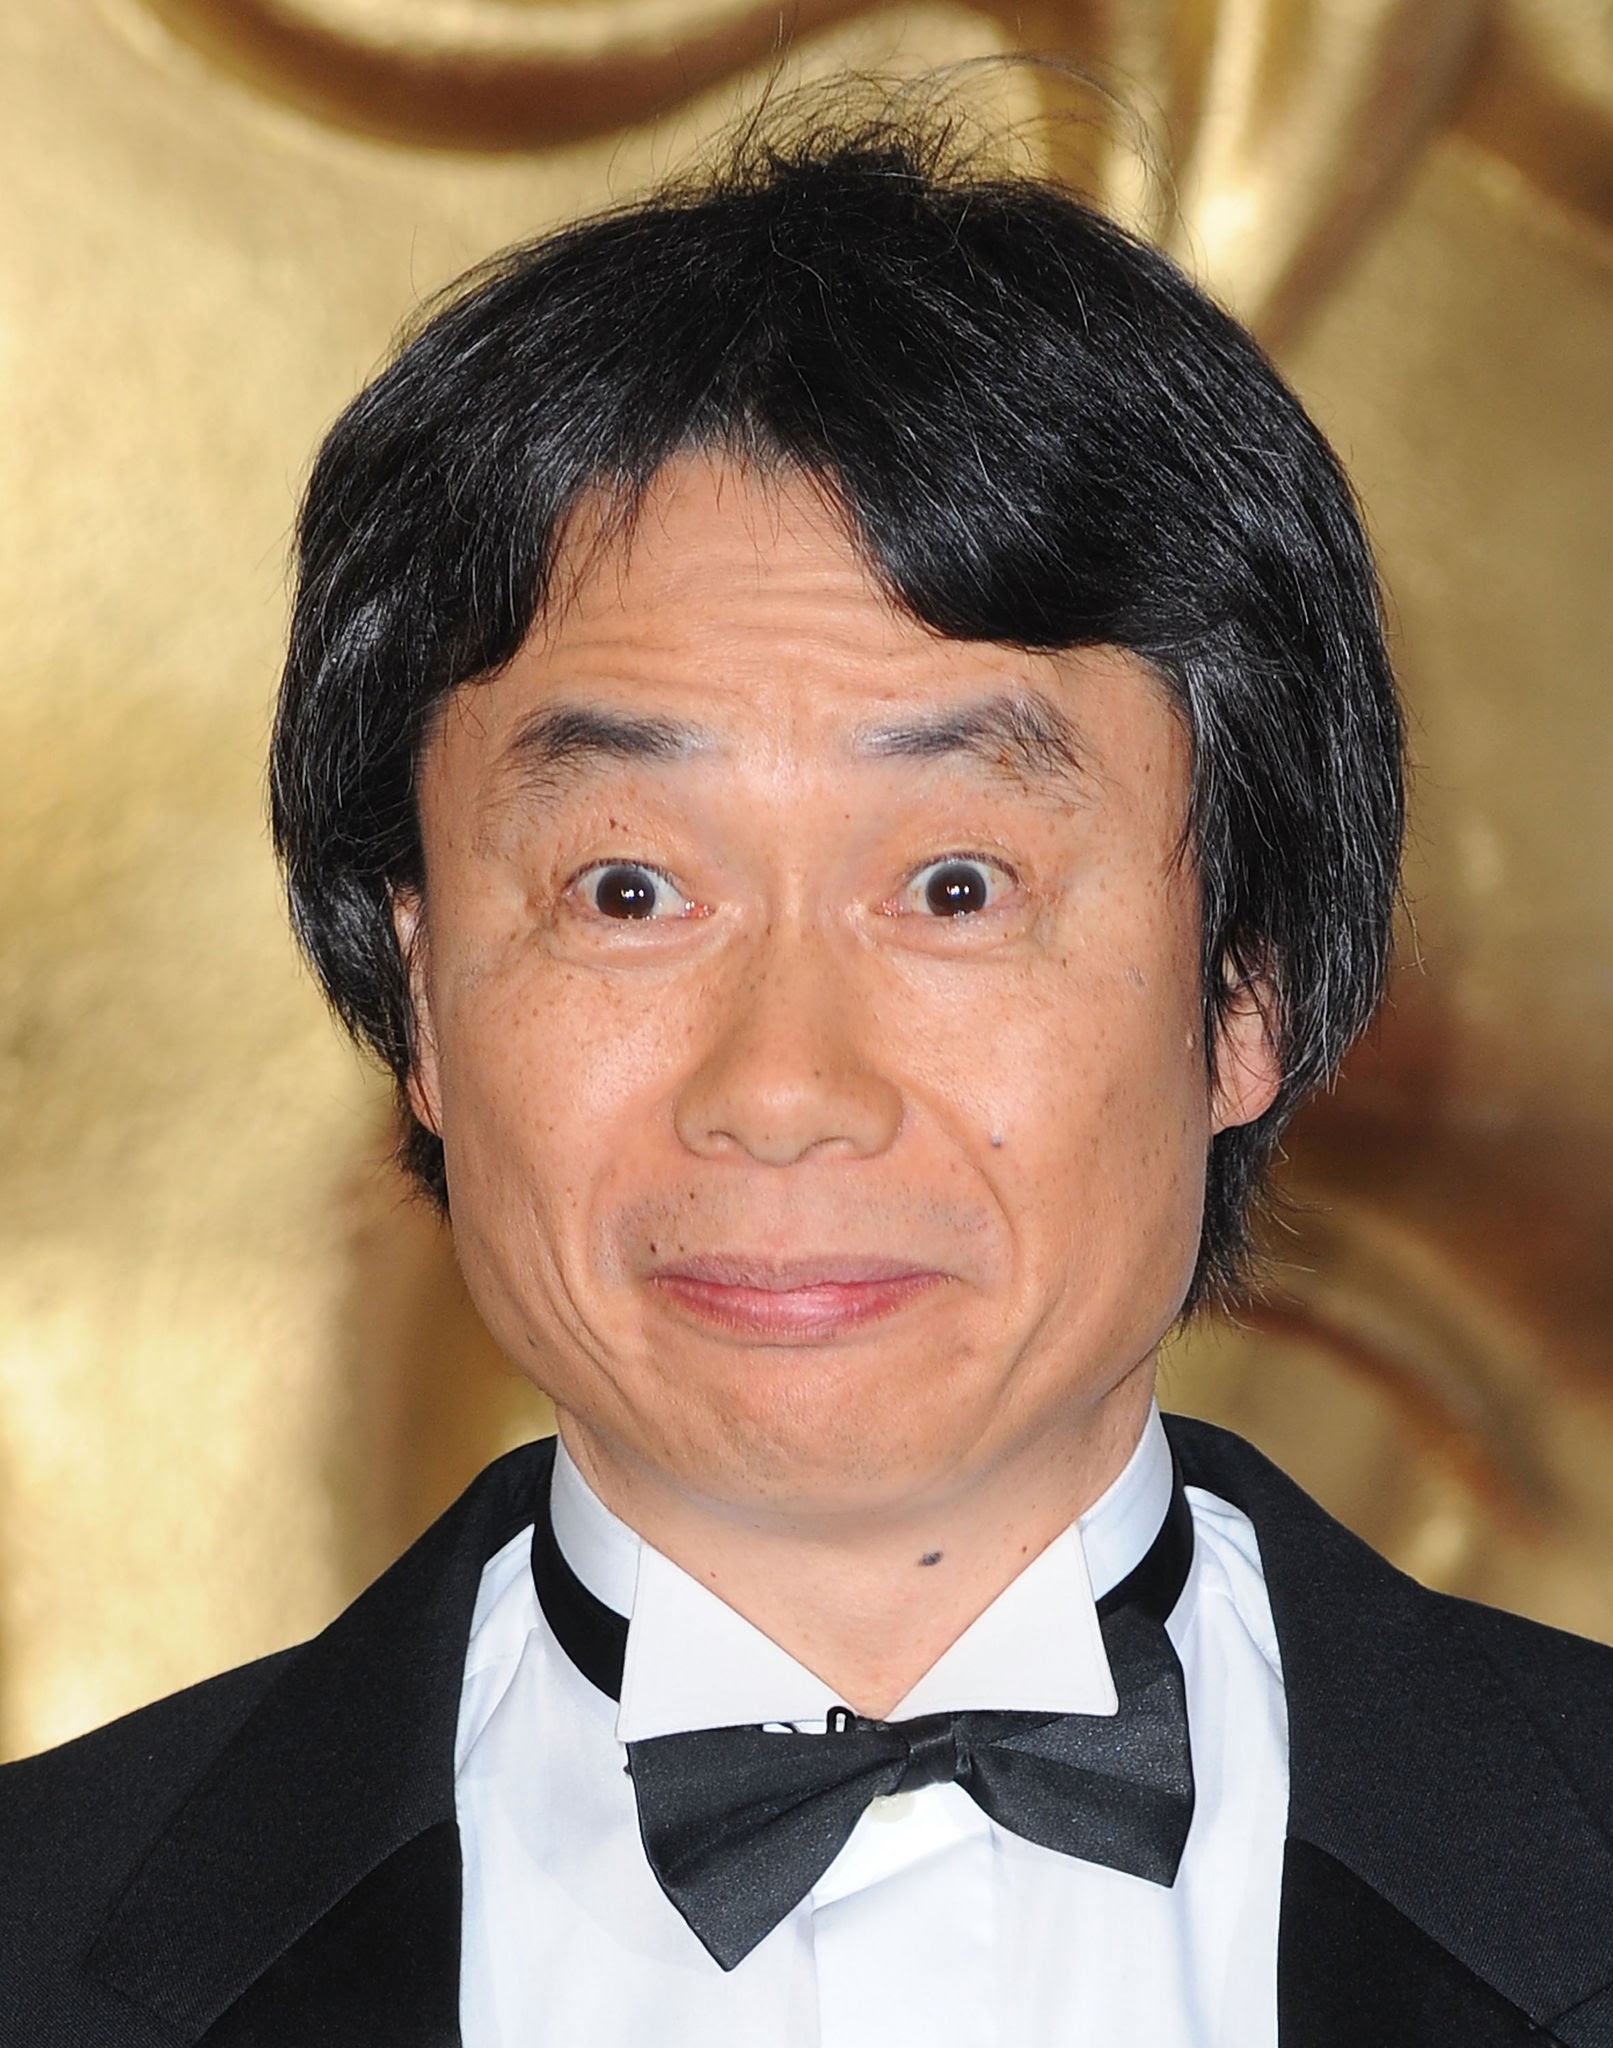 Miyamoto cumple 70 años: 70 datos que no conocías sobre la figura